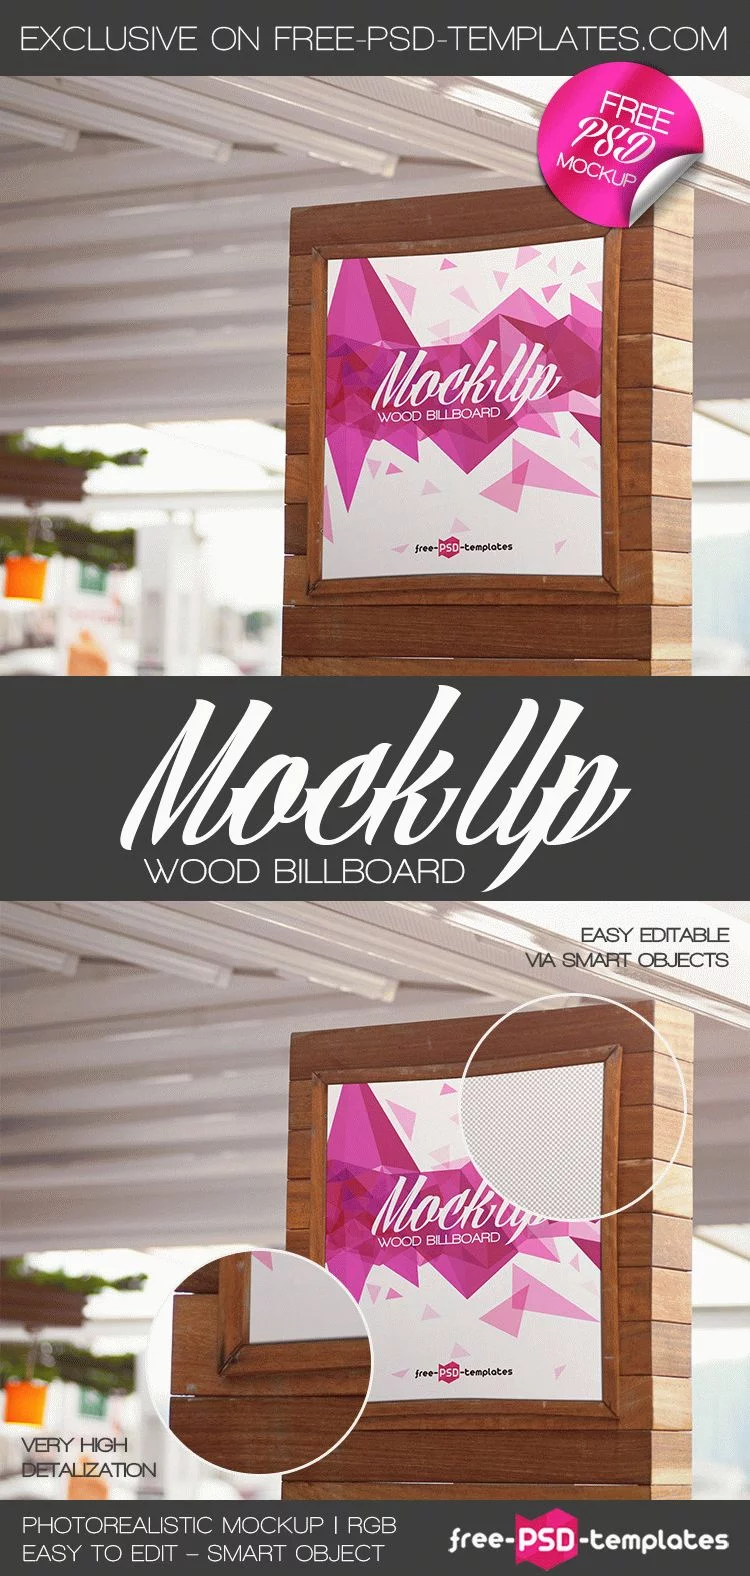 Free Wood Outdoor Billboard Mockup (PSD)